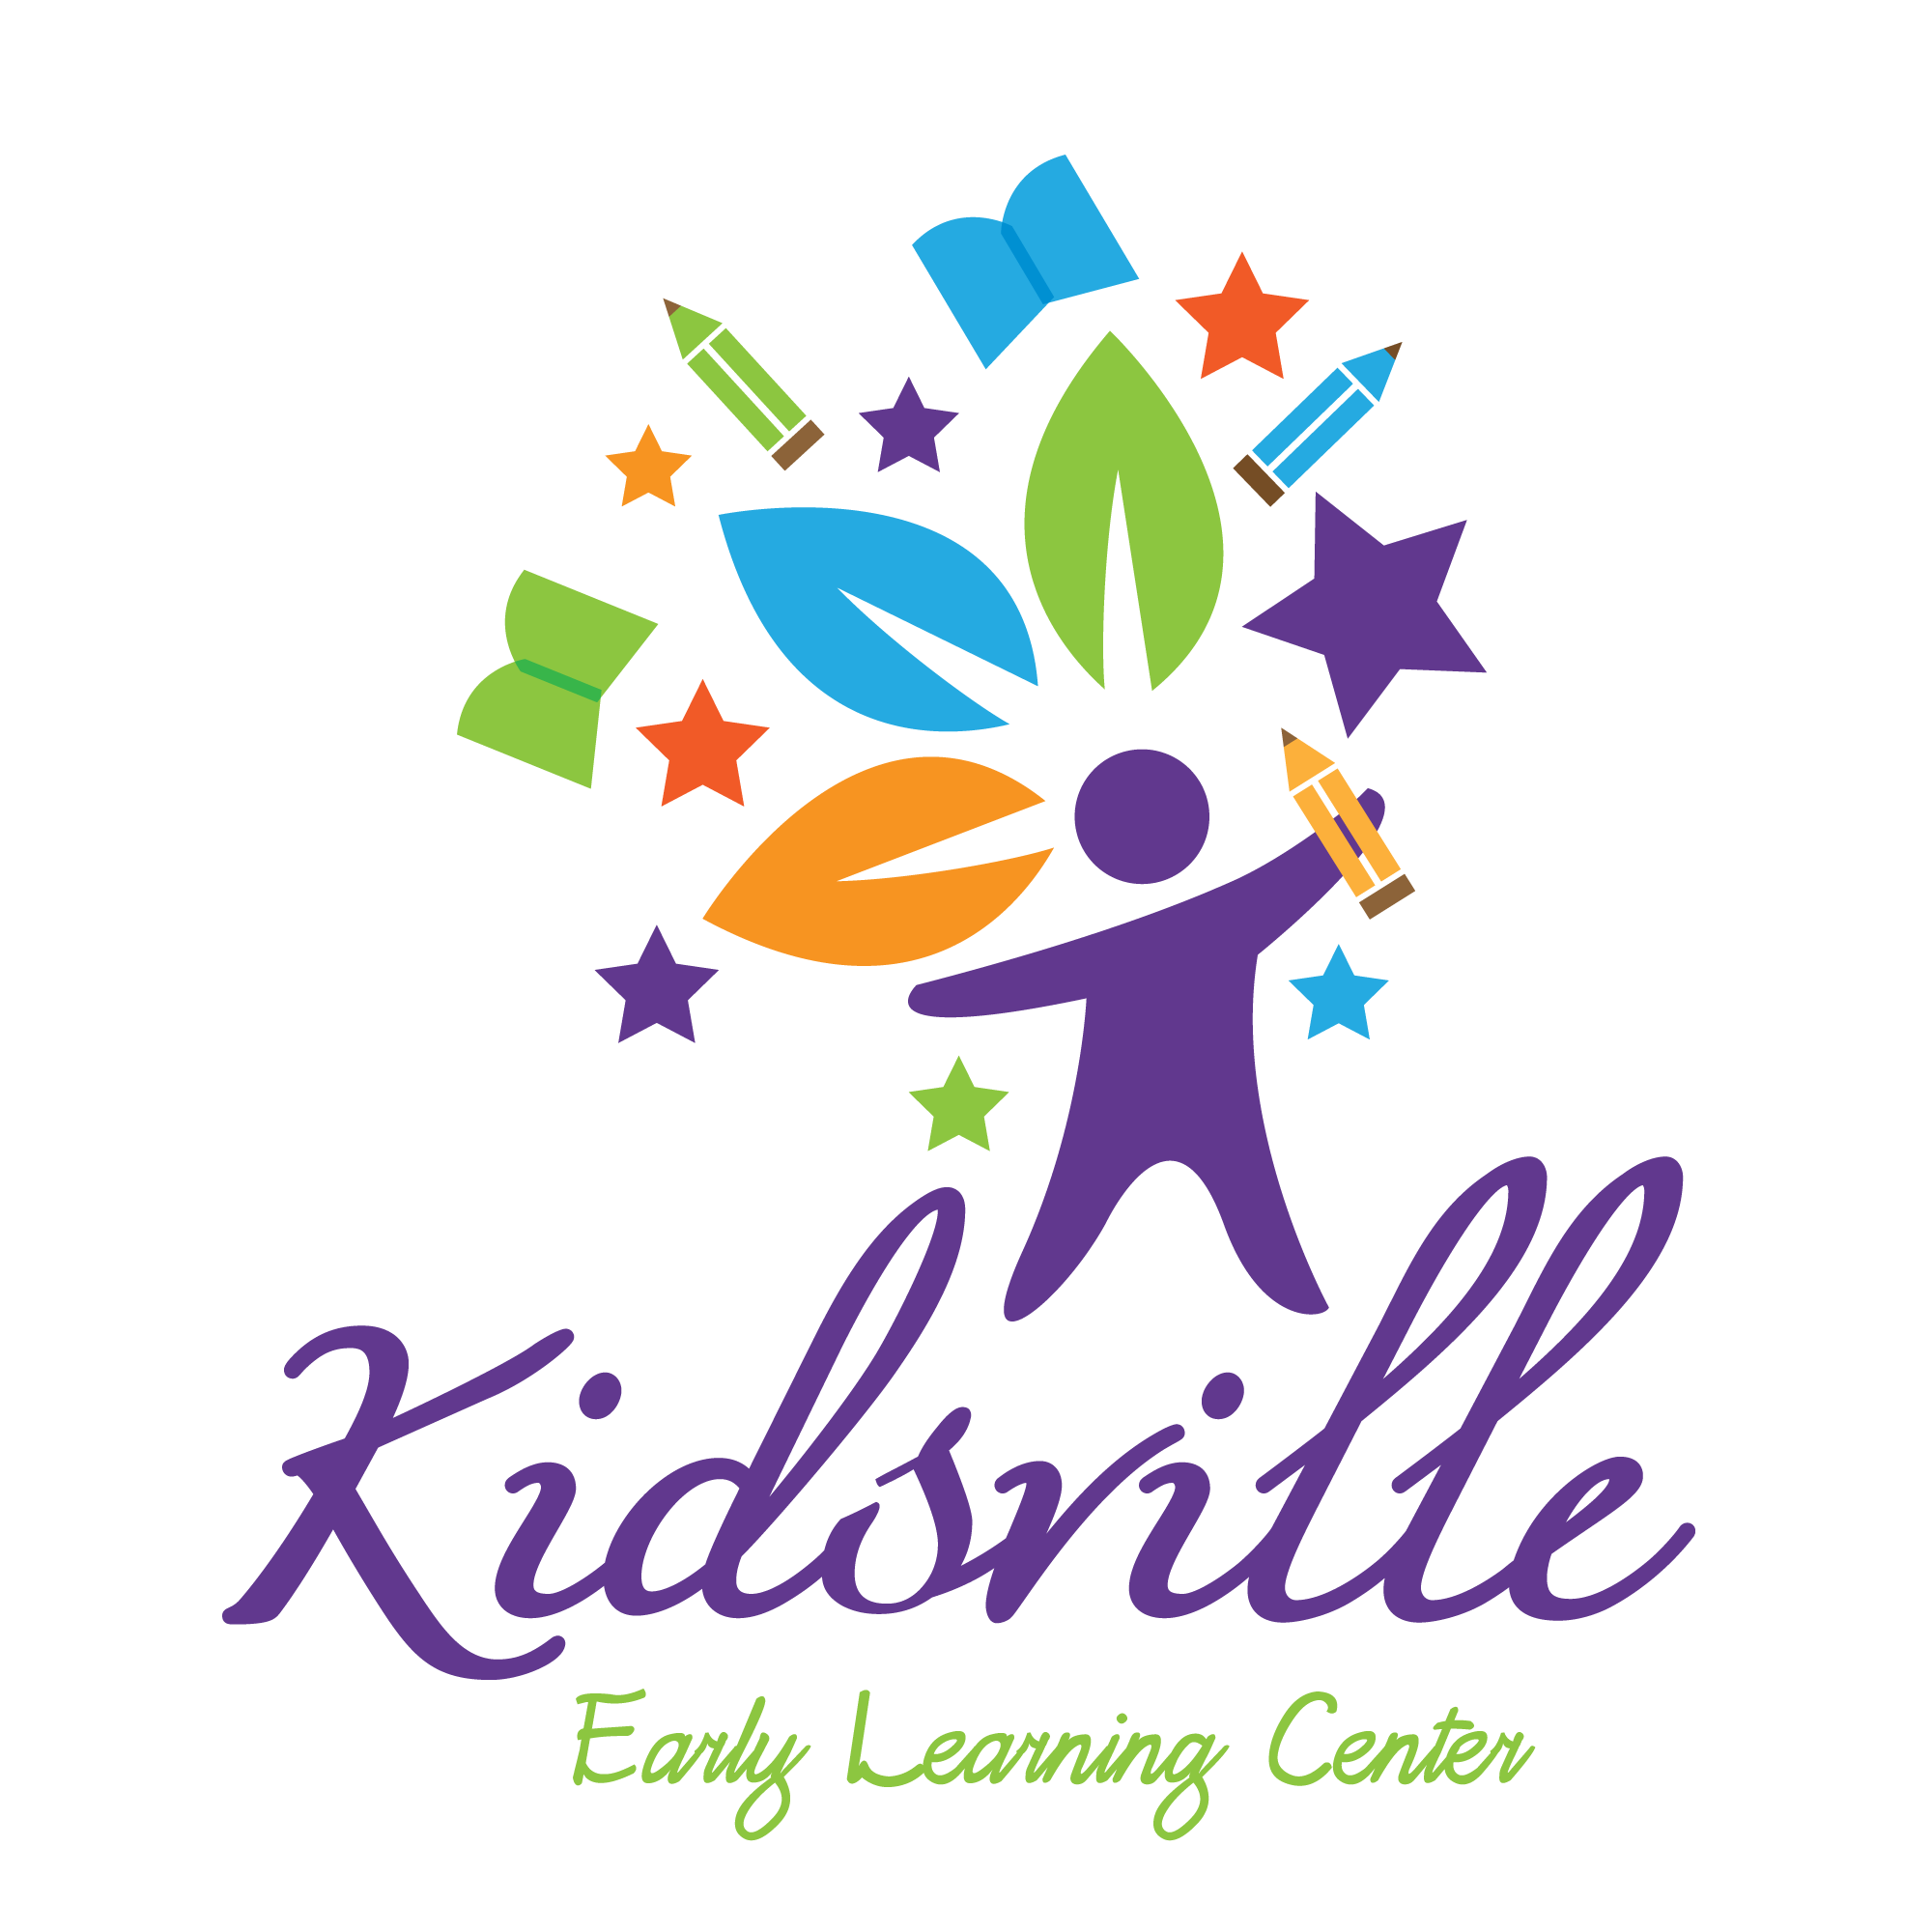 Kidsville Early Learning Center Logo